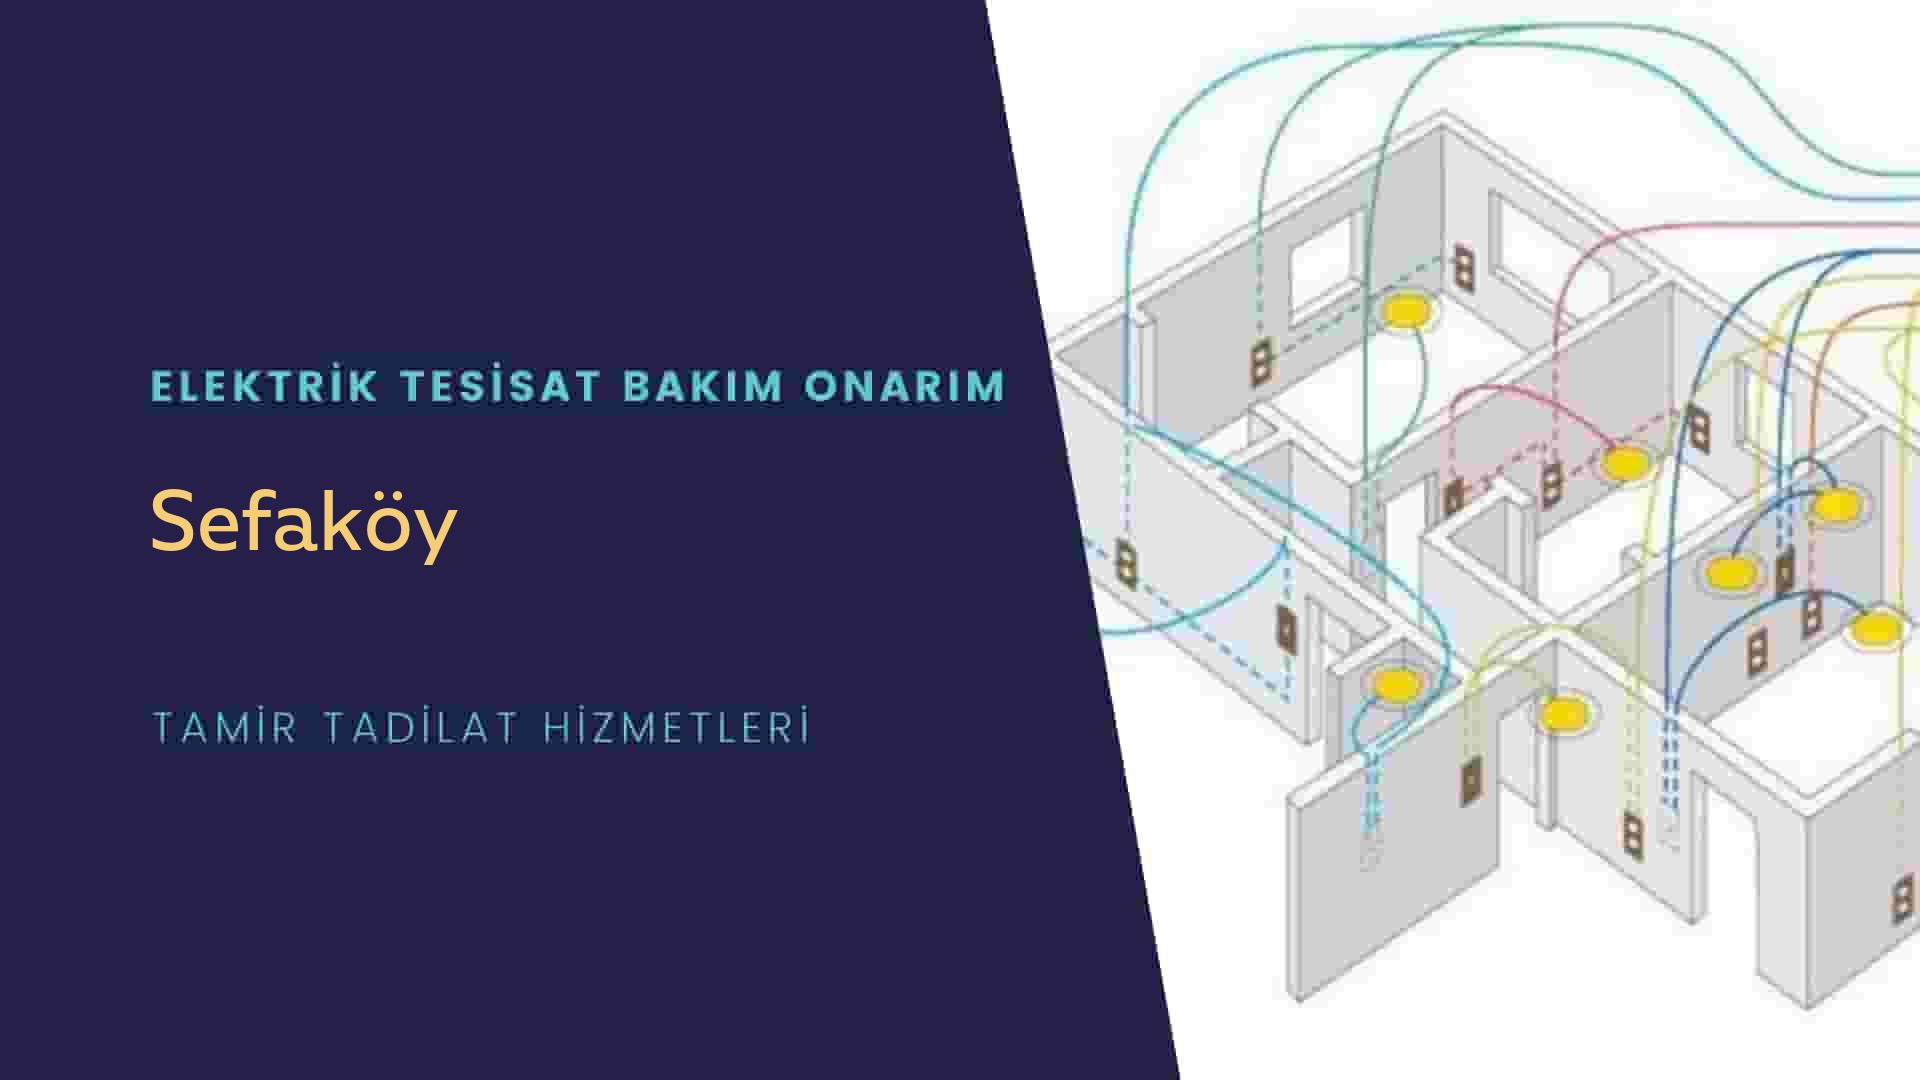 Sefaköy'de elektrik tesisatı ustalarımı arıyorsunuz doğru adrestenizi Sefaköy elektrik tesisatı ustalarımız 7/24 sizlere hizmet vermekten mutluluk duyar.